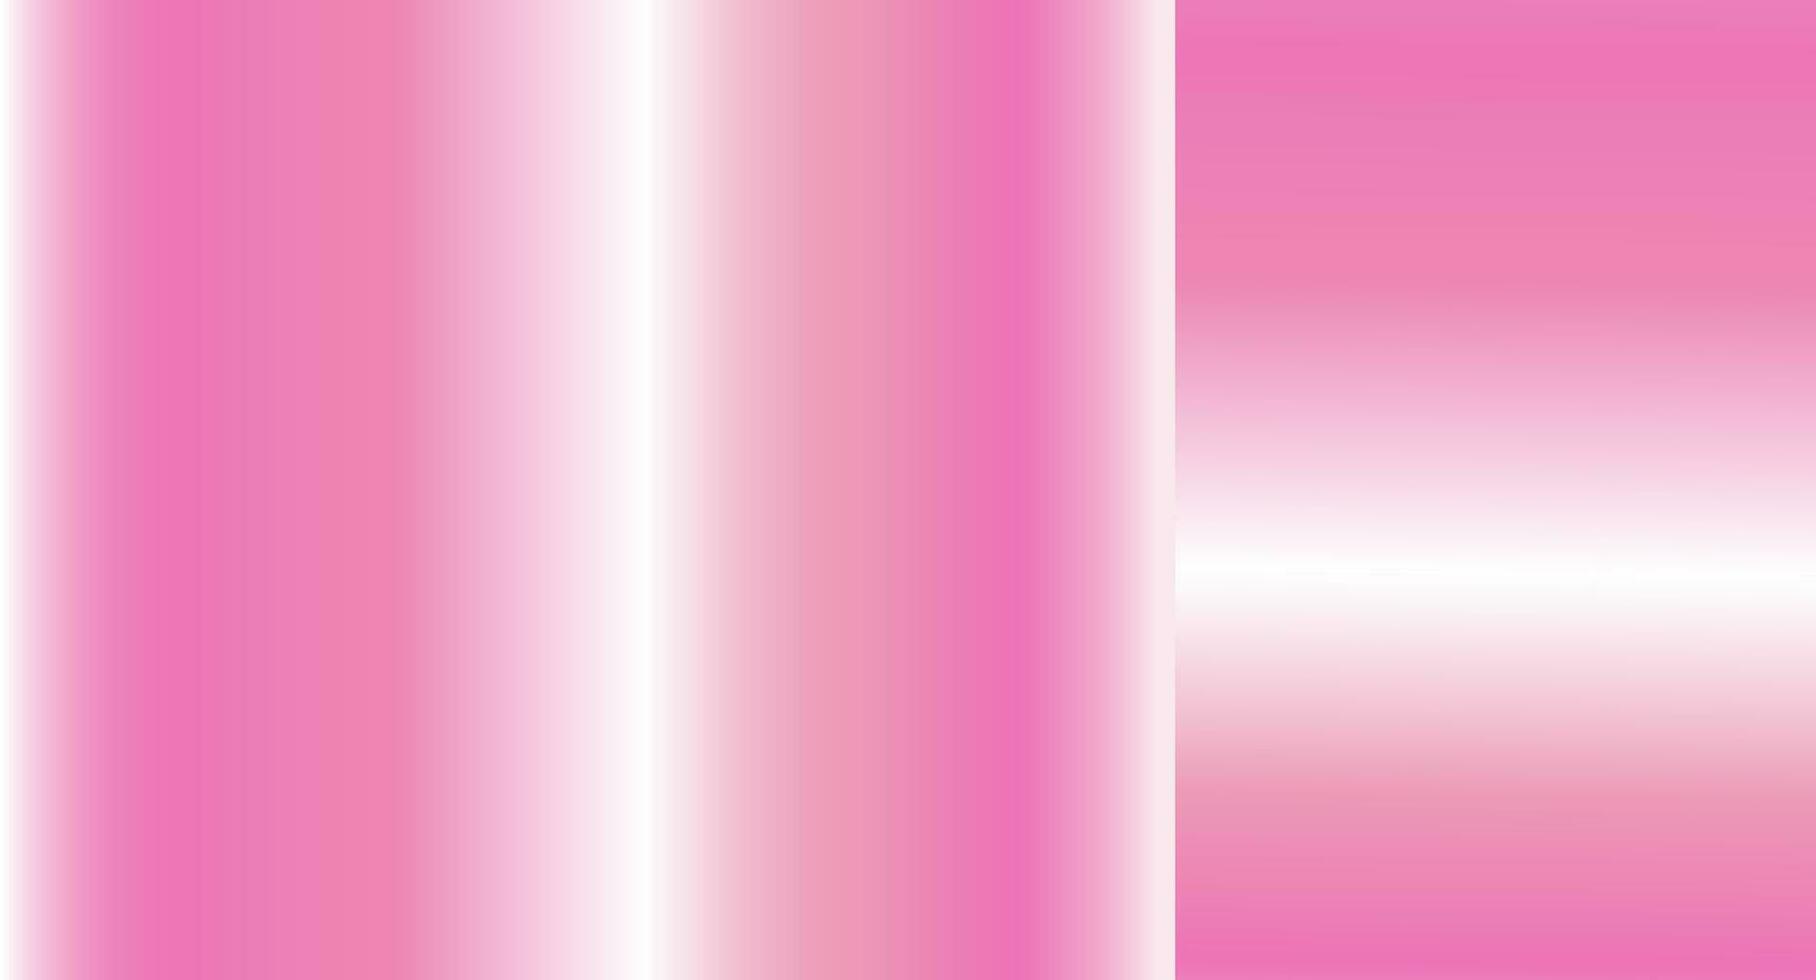 rosa metallo struttura.metallica vuoto verticale pendenza modello.astratto rosa decorazione.vettore brillante e metallo acciaio pendenza modello per confine, ferro telaio, etichetta disegno.vettore illustrazione vettore